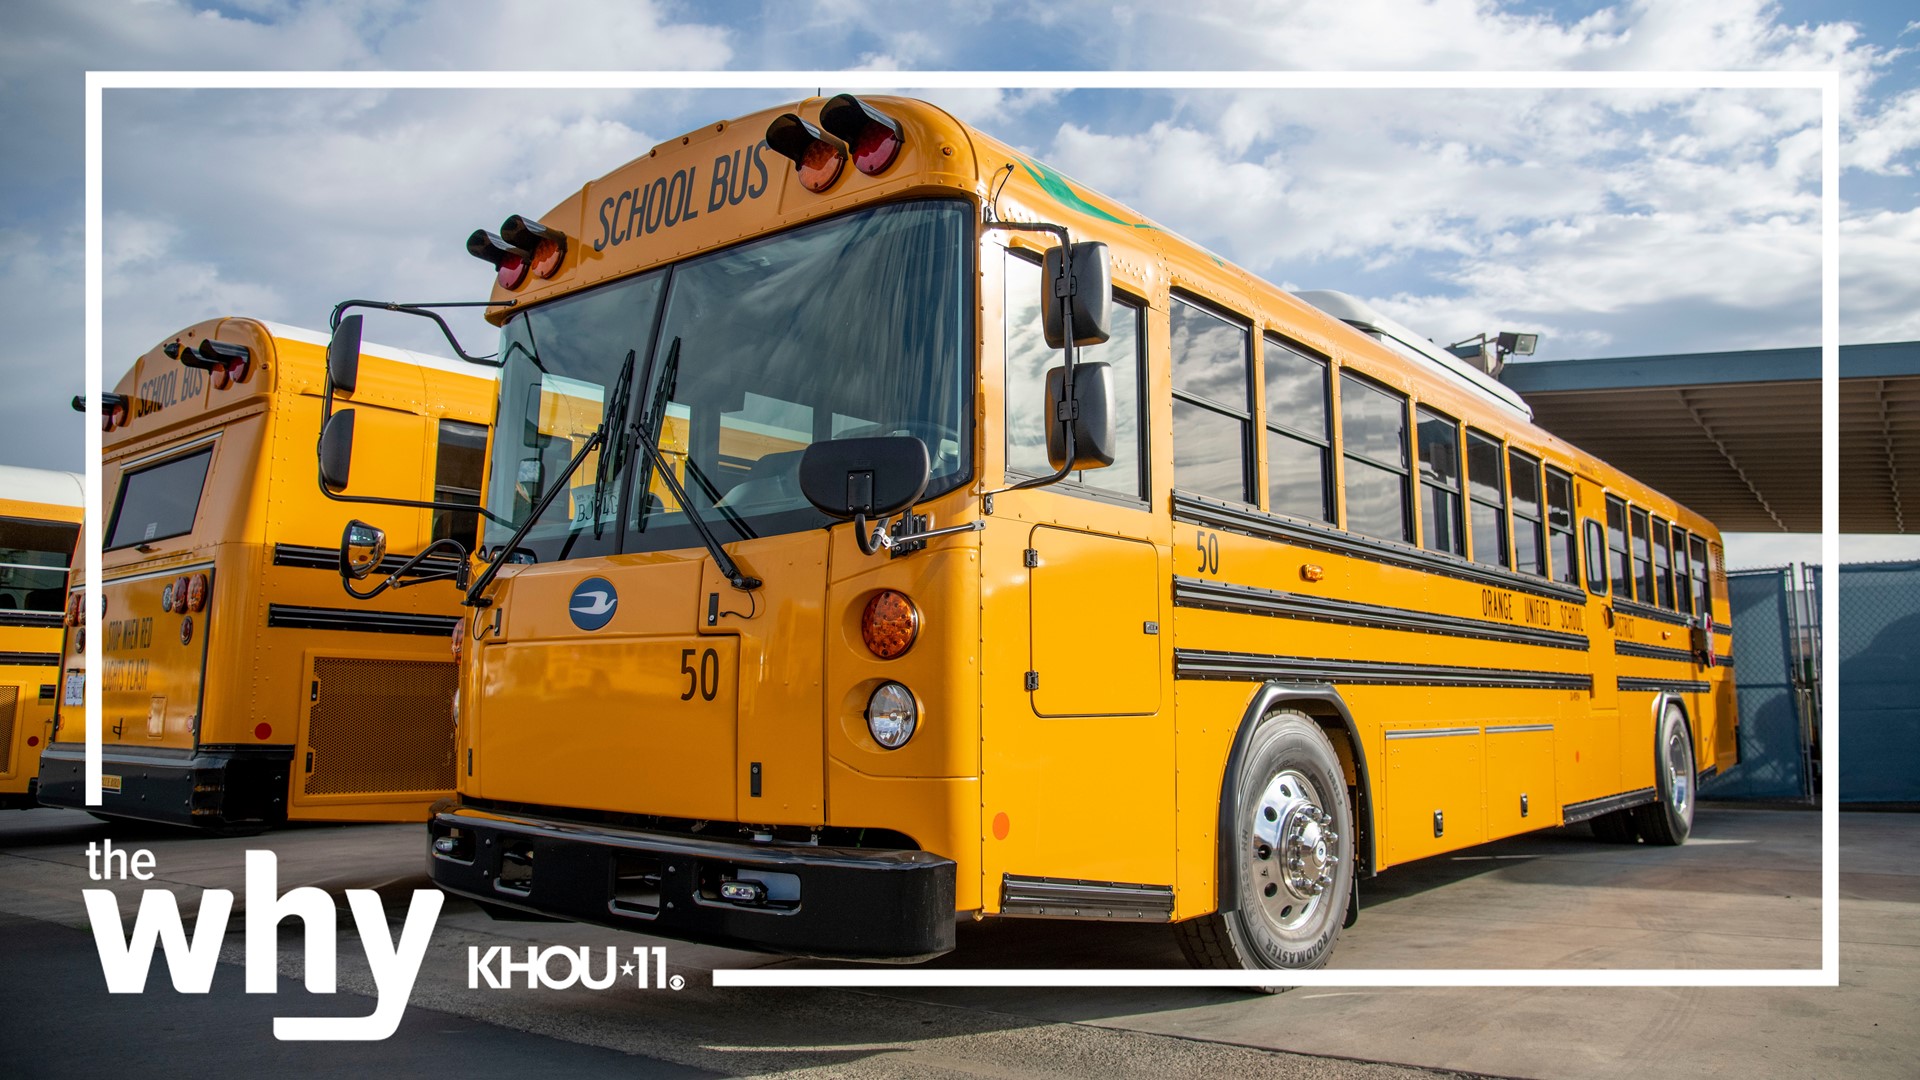 全国各地的学区都在把那些冒着柴油烟雾的老式黄色校车换成电动巴士。